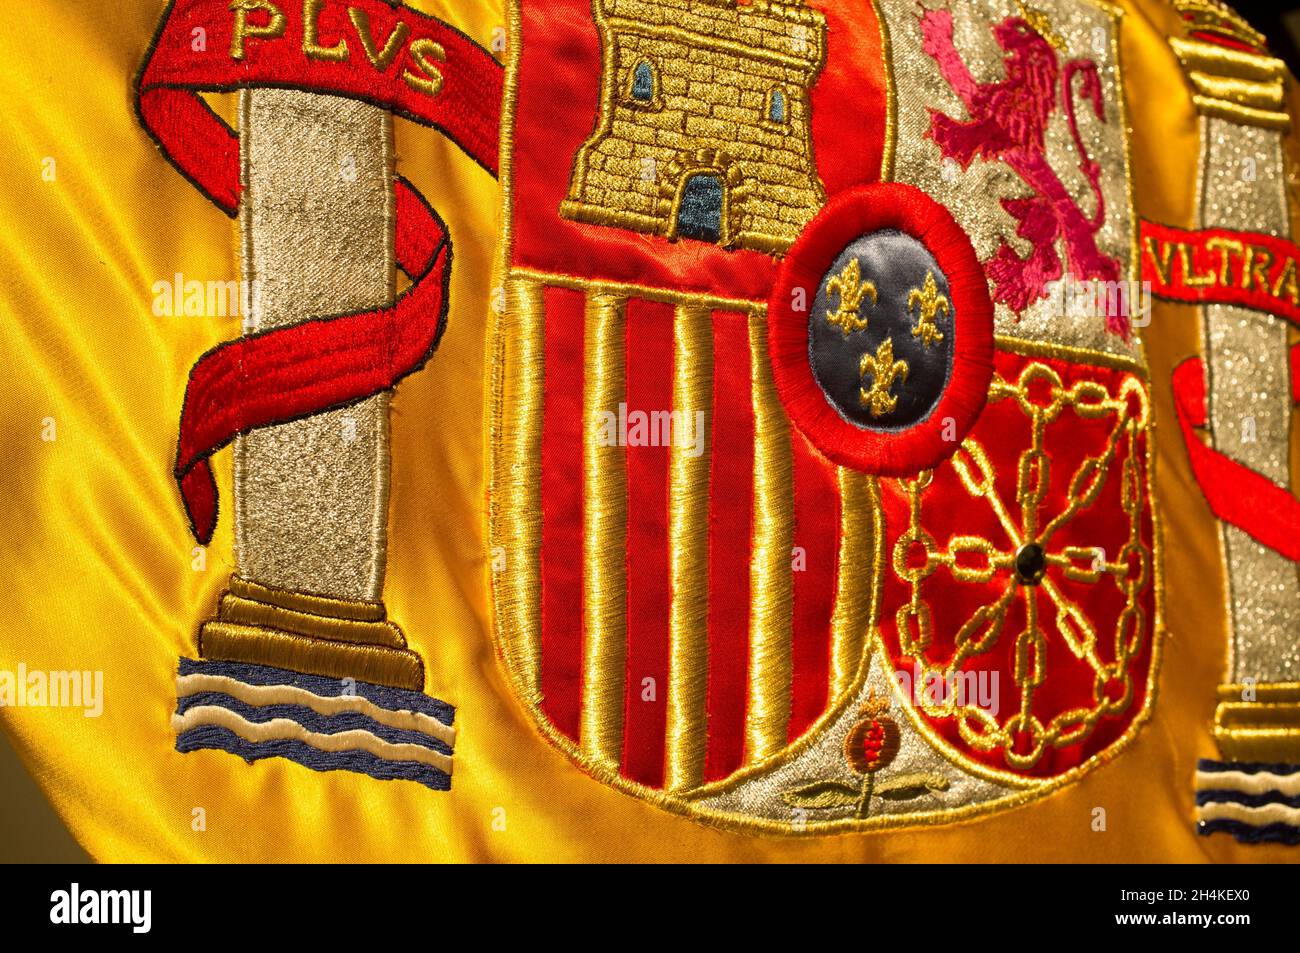 Armoiries de la nation espagnole richement brodées sur son drapeau.Gros plan. Banque D'Images